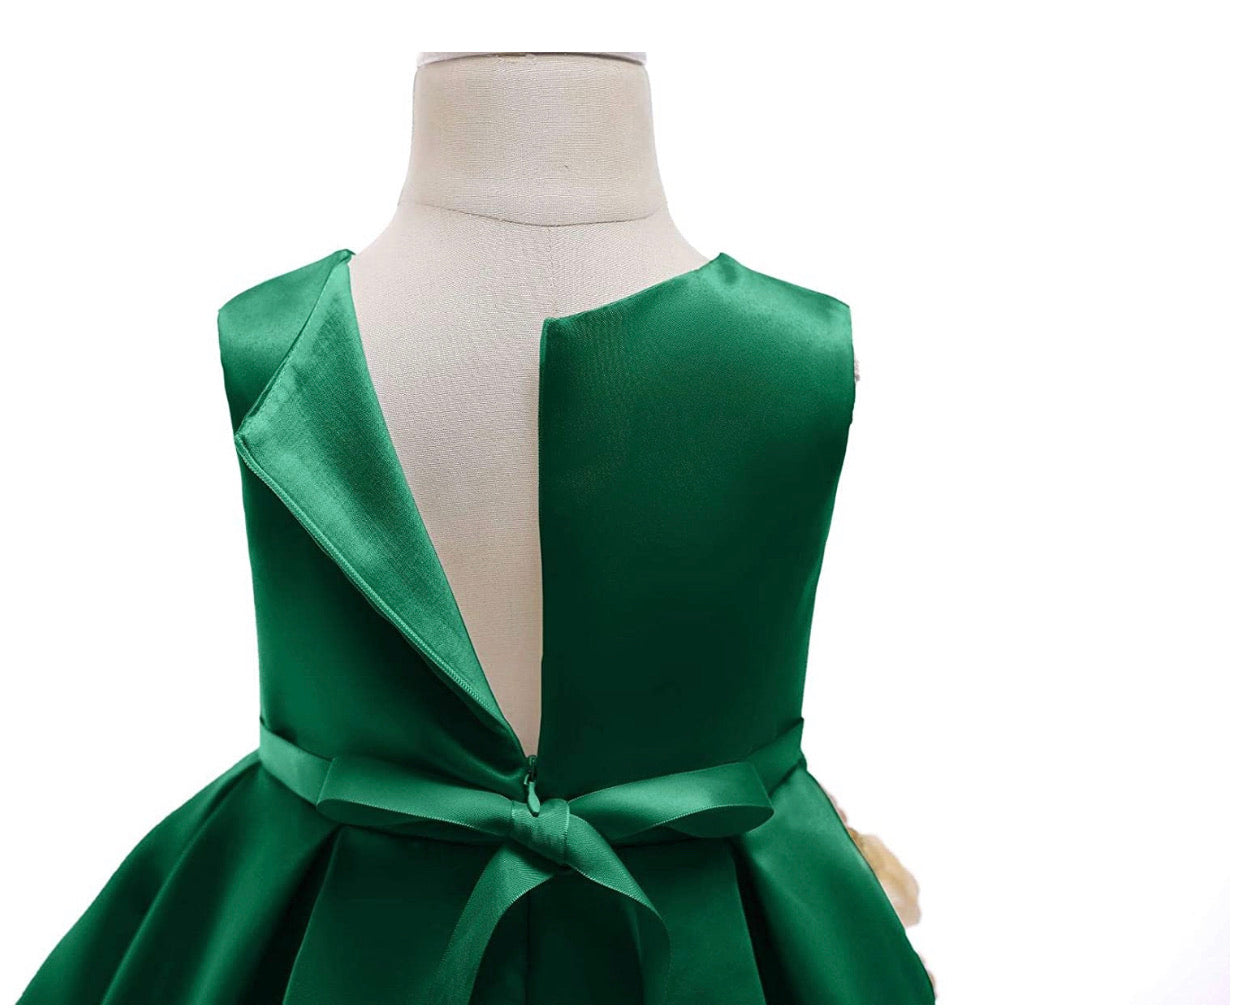 Lovely Full Flower Girl’s Dress, Sizes 2T - 9 (Green)